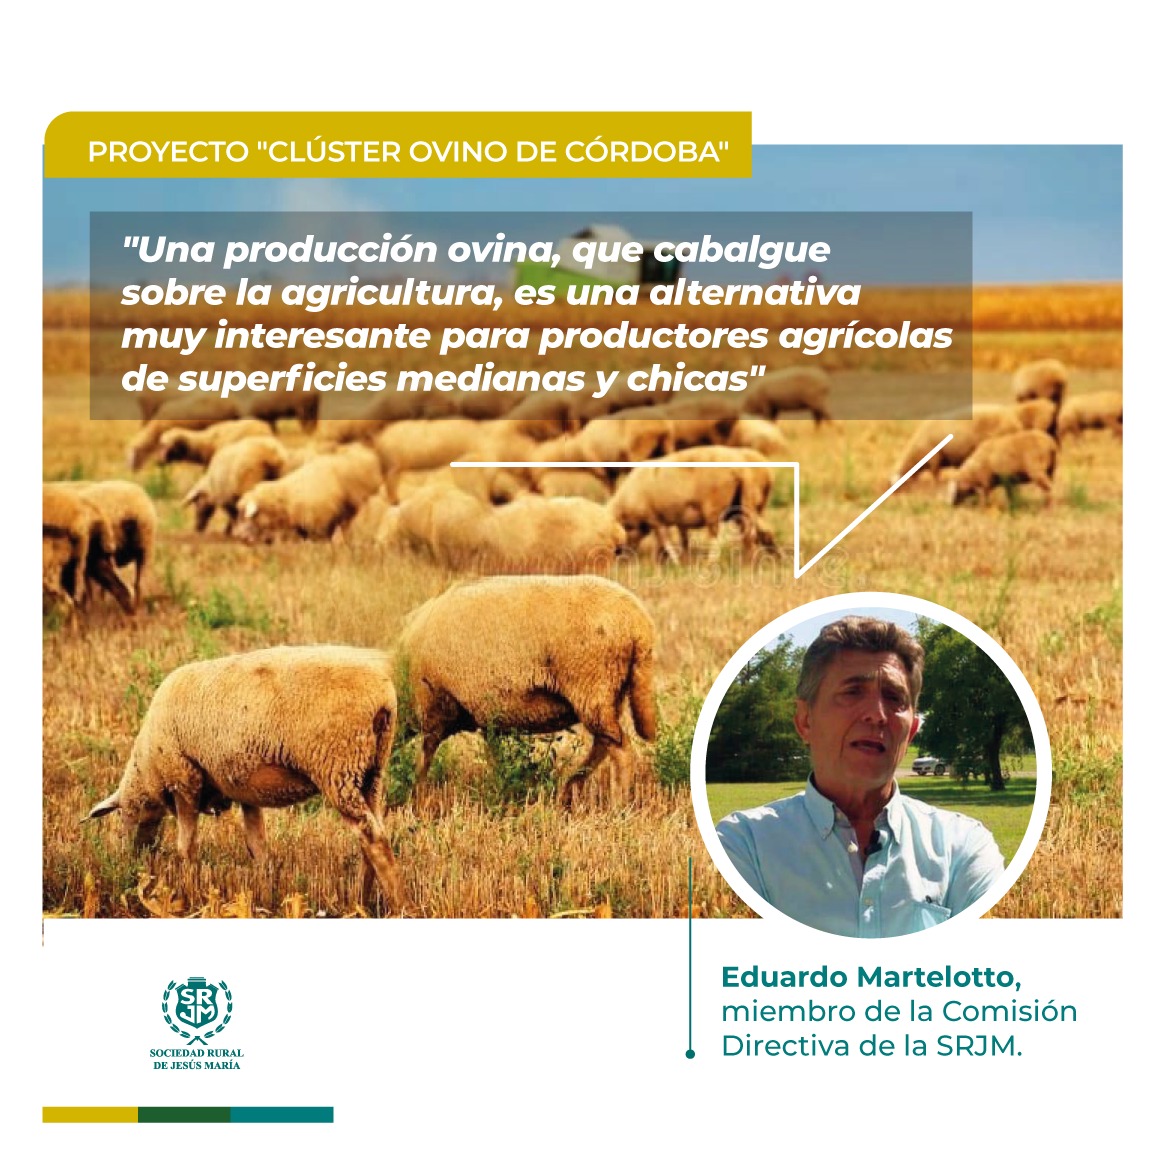 Las ventajas de integrar ovinos a los sistemas productivos agrícolas